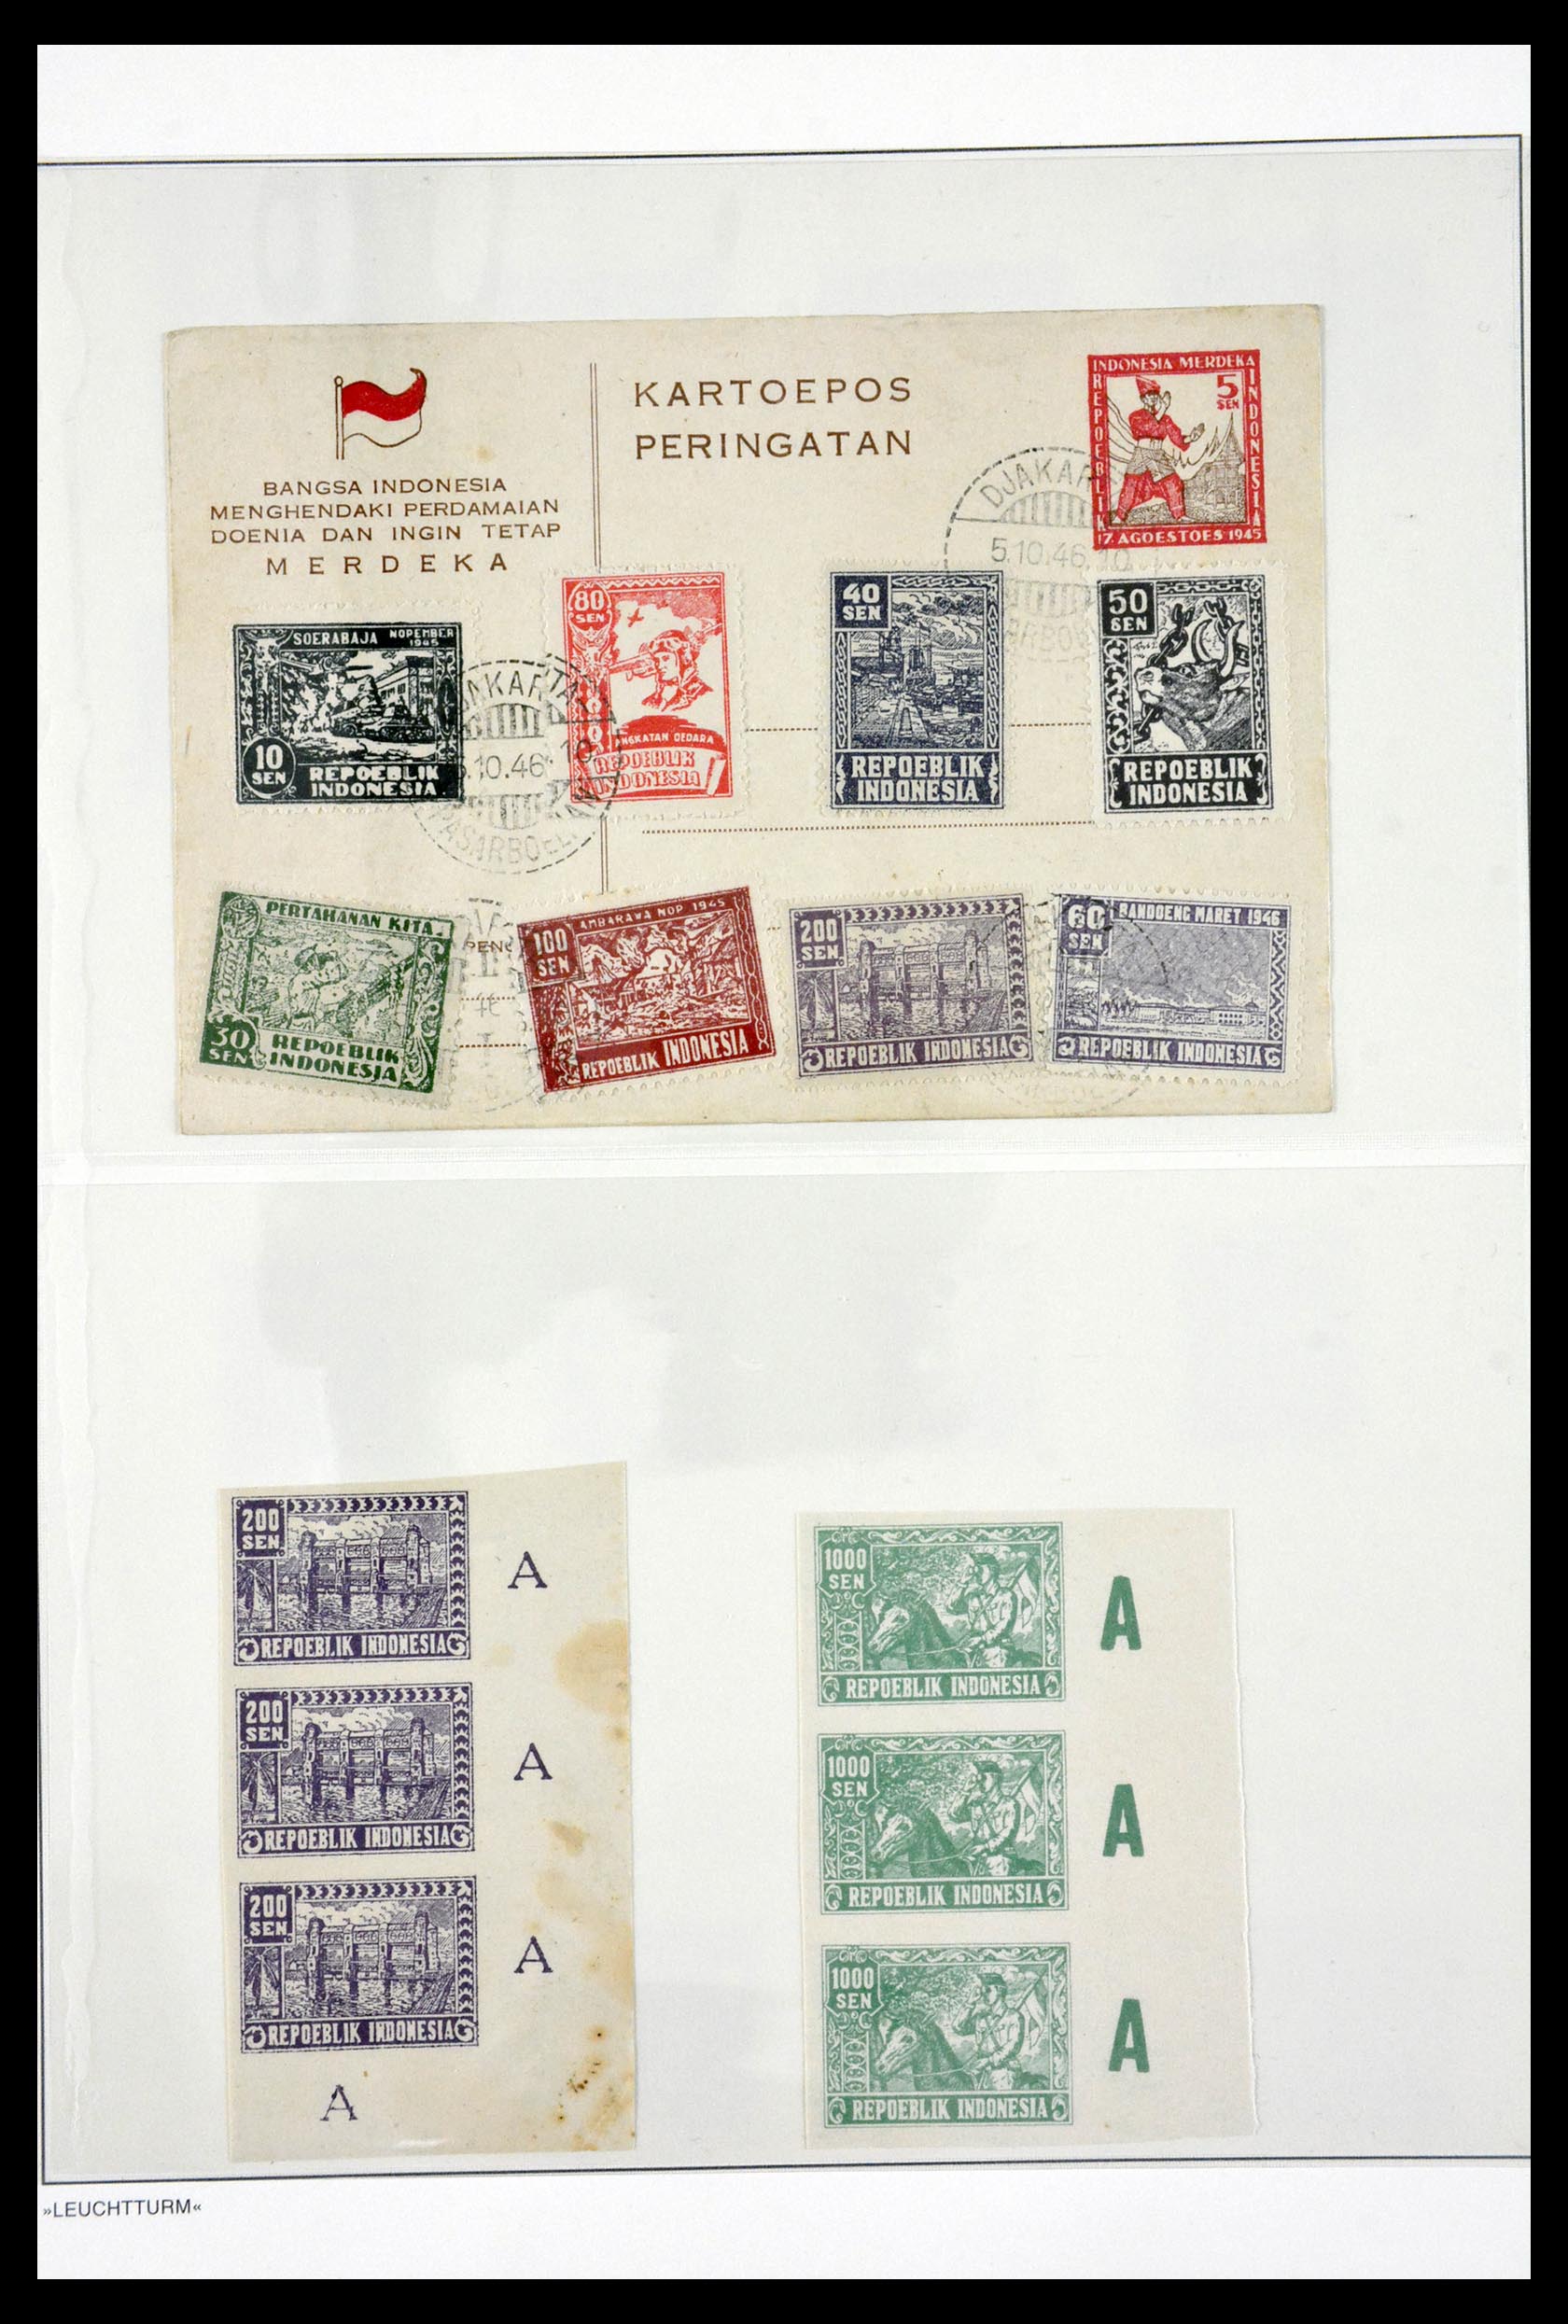 29786 038 - 29786 Interimperiode Indonesië 1945-1948.